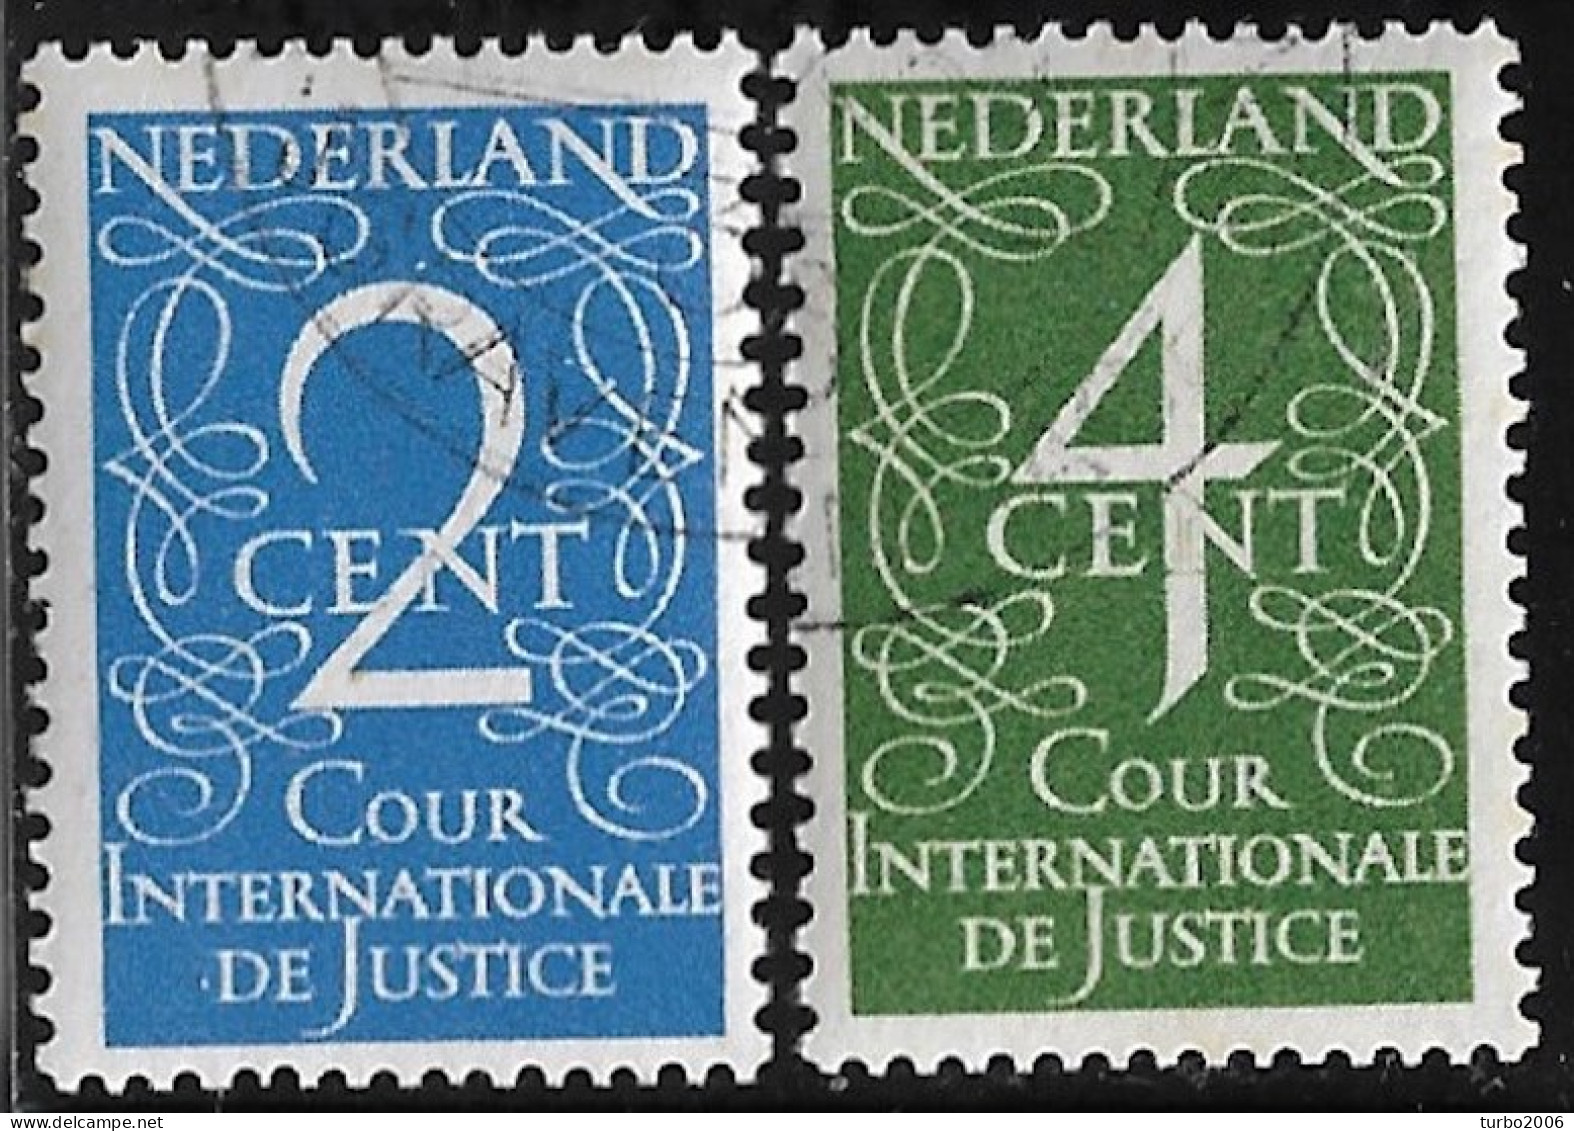 1950 C.I.D.J. Dienstzegels Cijfers NVPH D 25 / 26 - Dienstmarken